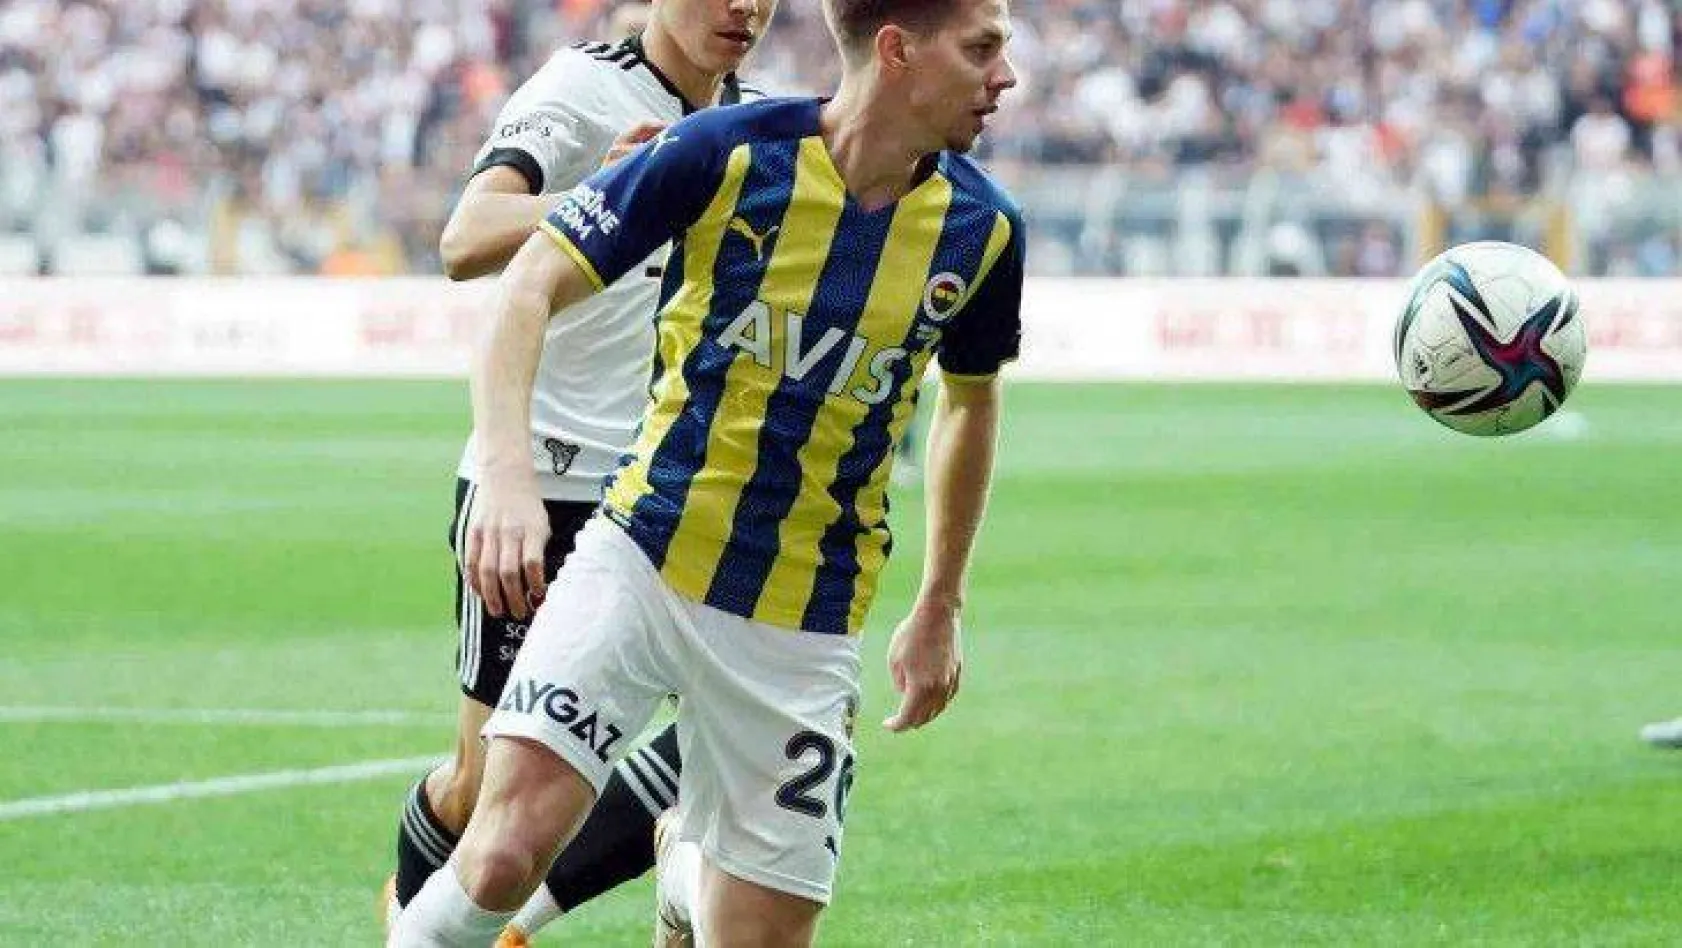 Spor Toto Süper Lig: Beşiktaş: 1 - Fenerbahçe: 1 (İlk yarı)